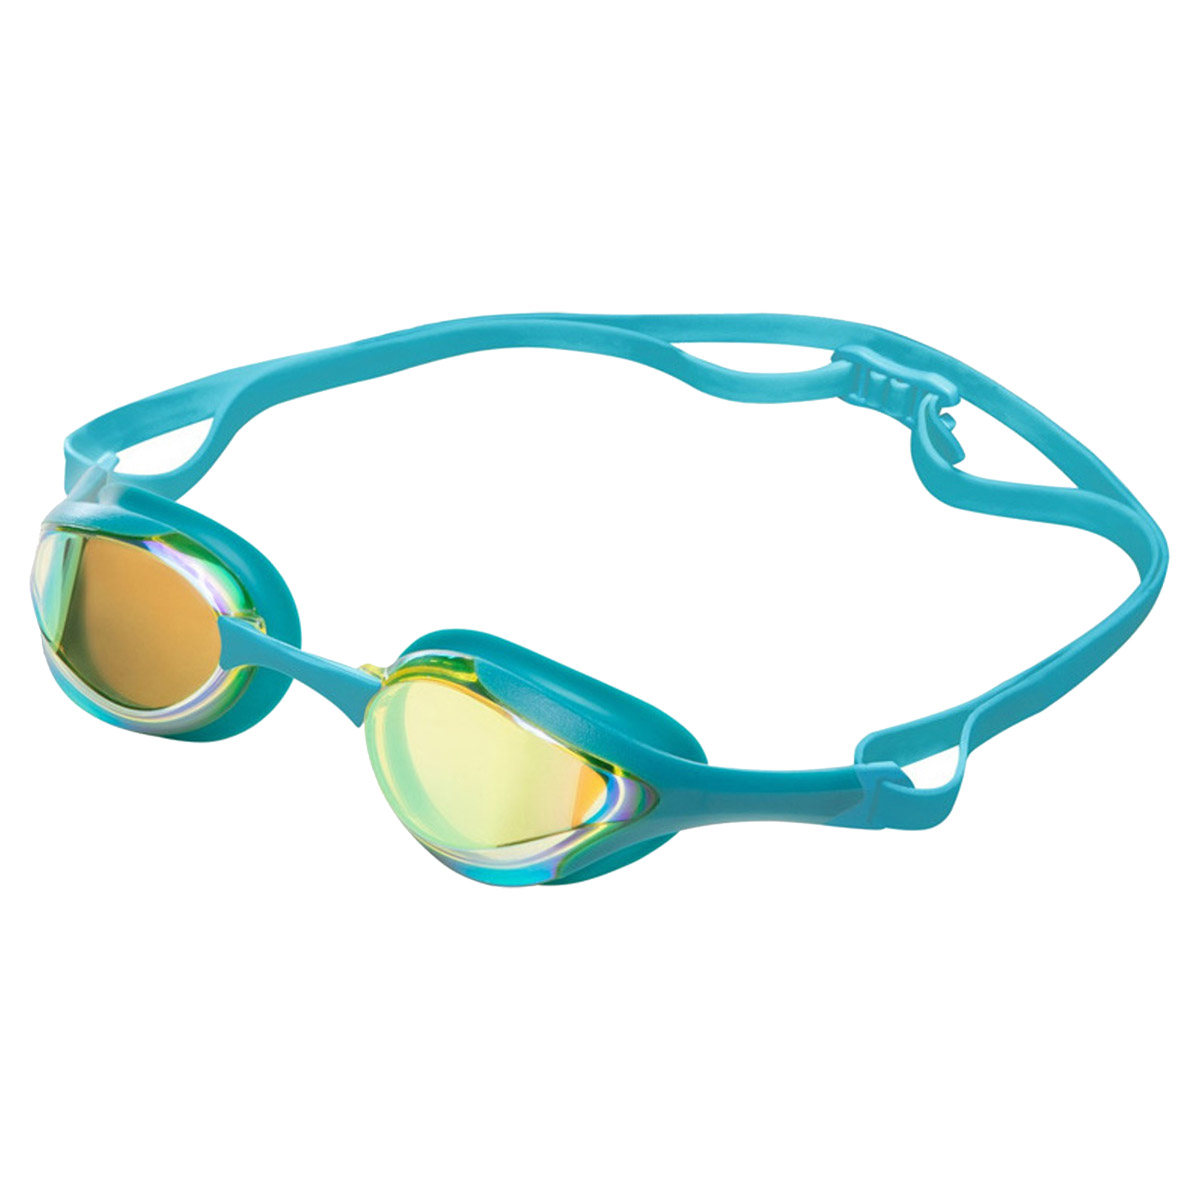 Zone3 Volare Streamline Racing Swim Goggles - Teal / White / Copper